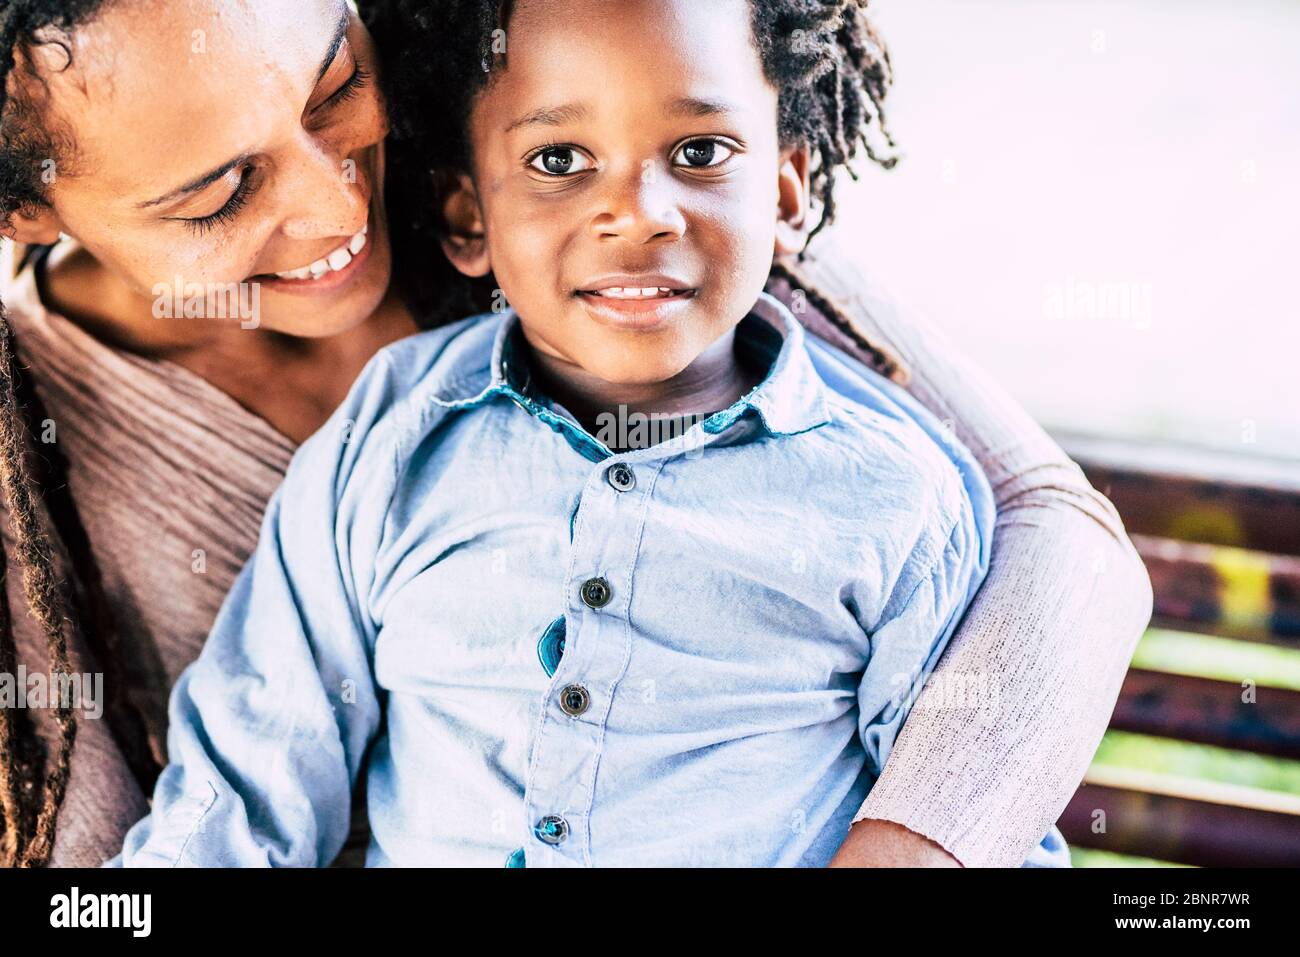 Familia amor concepto con afro negro madre y niños hijo pequeño juntos abrazando y sonriendo con felicidad - hermosa pareja momia y niño en actividades de ocio al aire libre Foto de stock